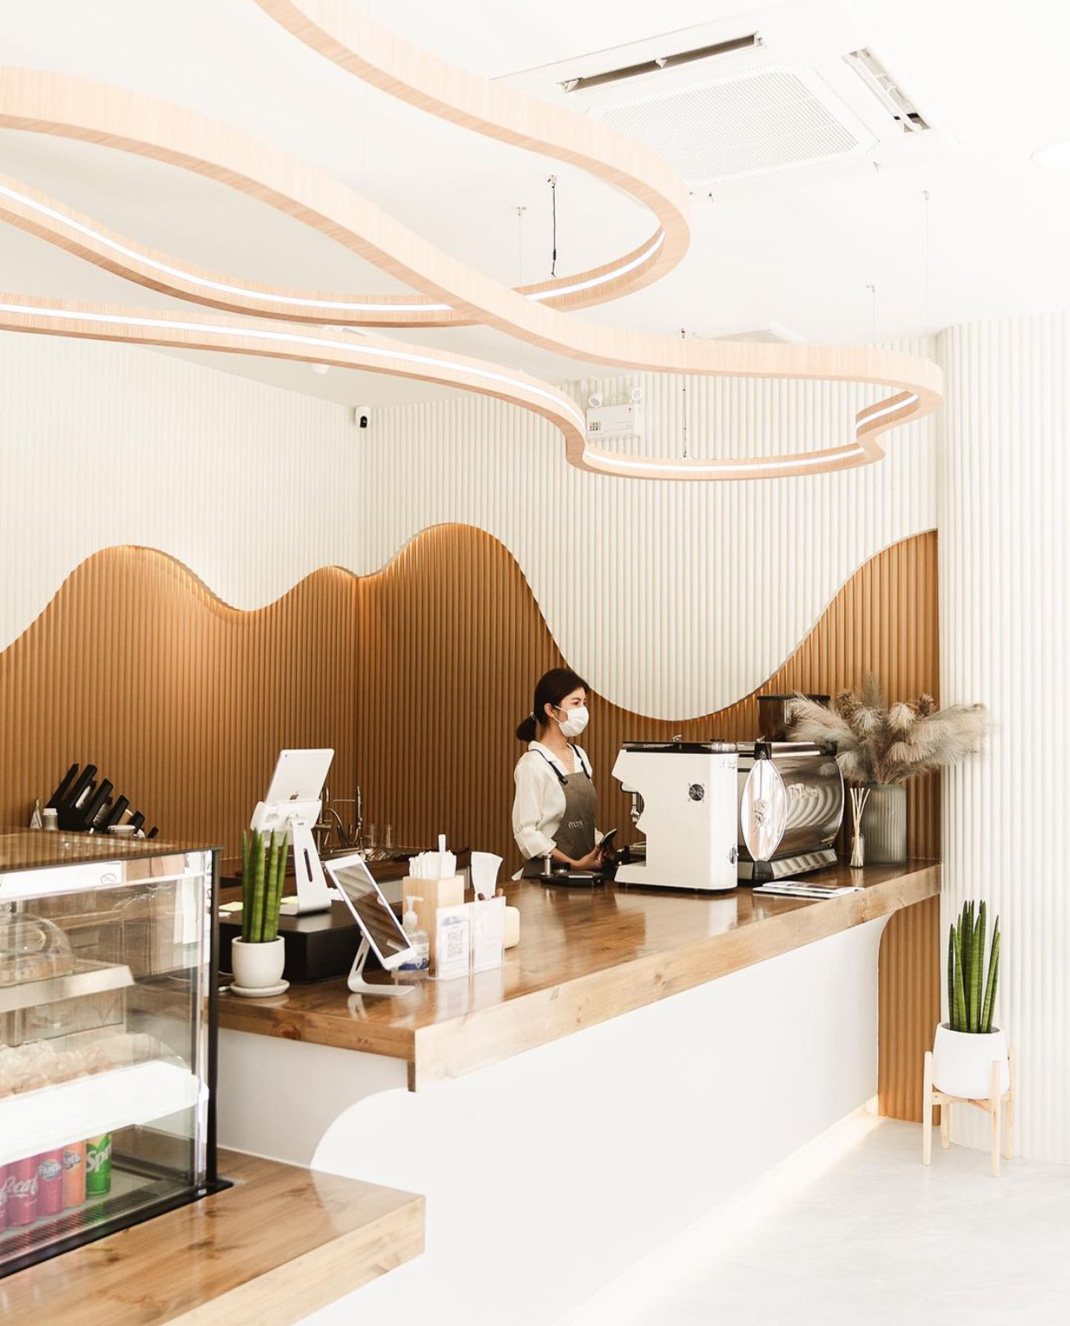 间餐厅MOLYN Café 泰国 曼谷 间餐 咖啡店 格栅 logo设计 vi设计 空间设计